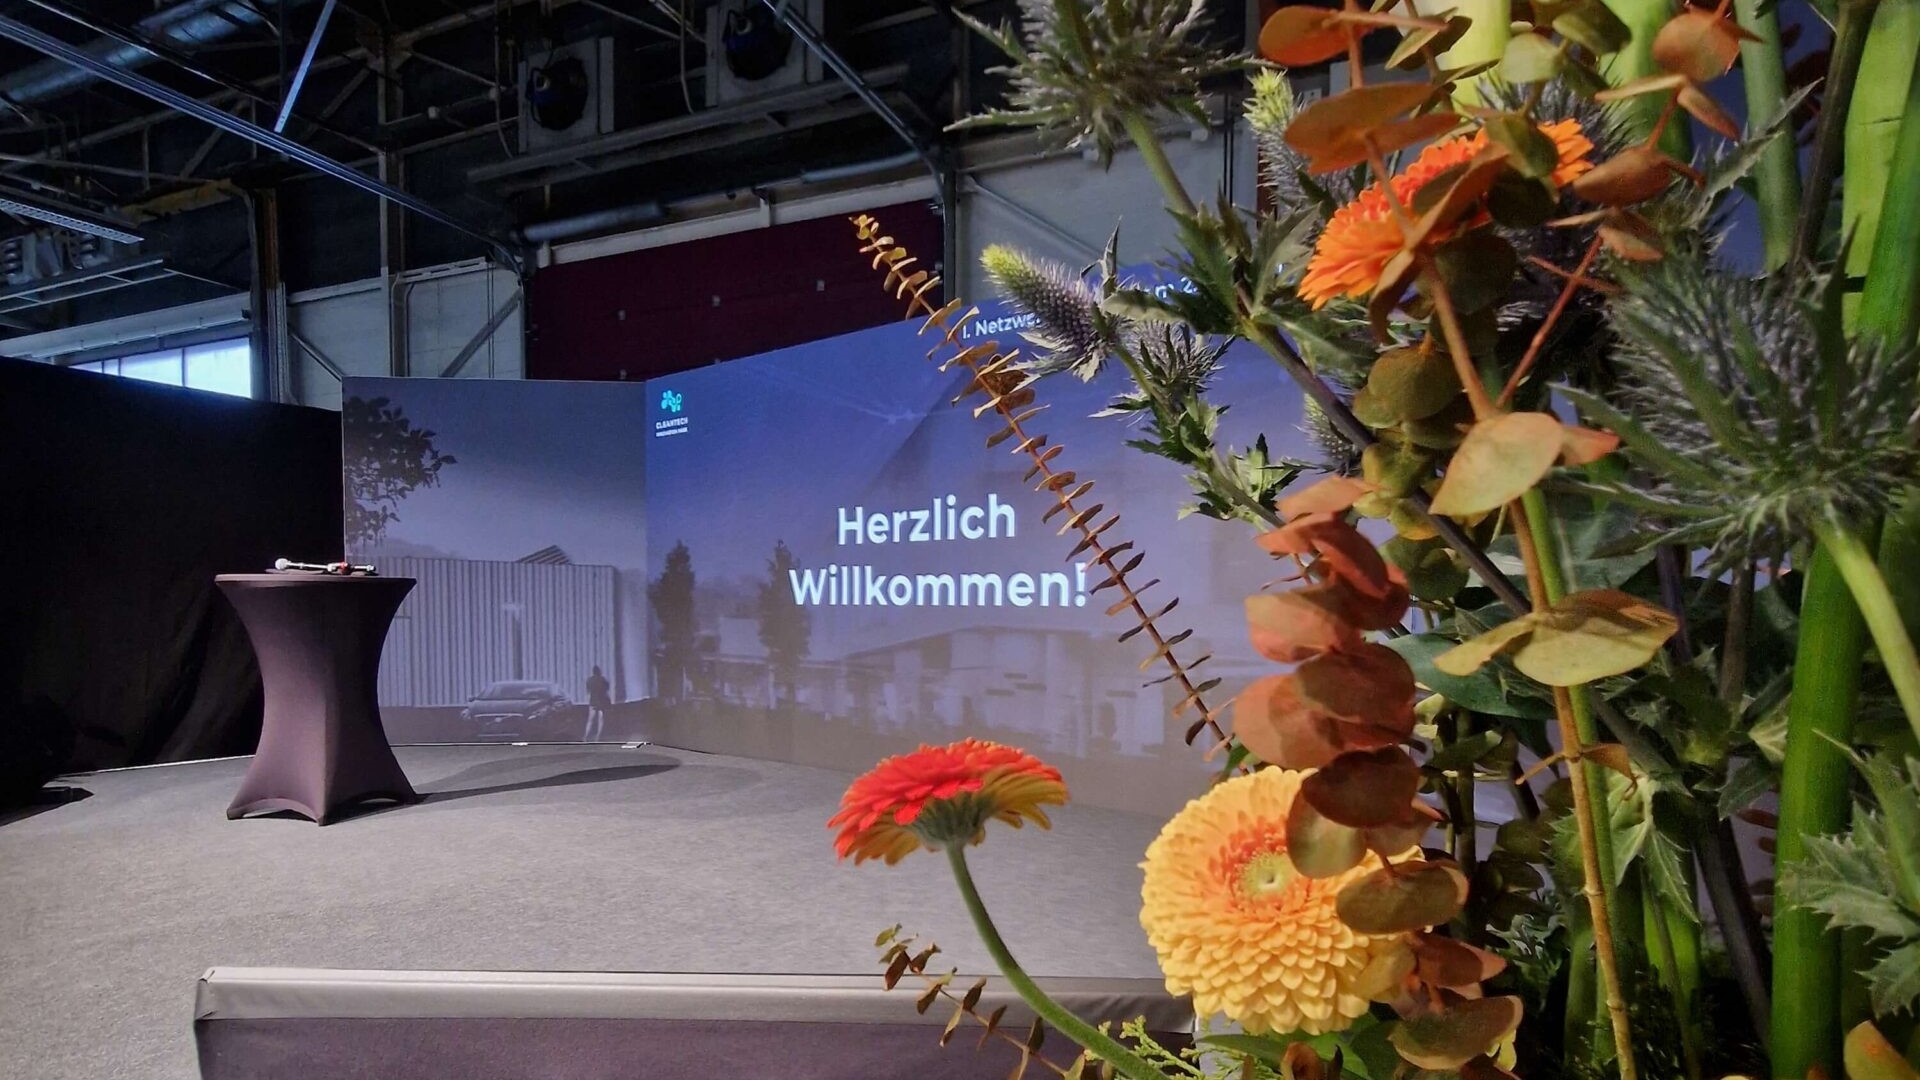 LED-Wand auf Bühne. Zu sehen ist eine Präsentation. Der Text sagt: Herzlich Willkommen. Im Vordergrund ist ein Blumenstraus.